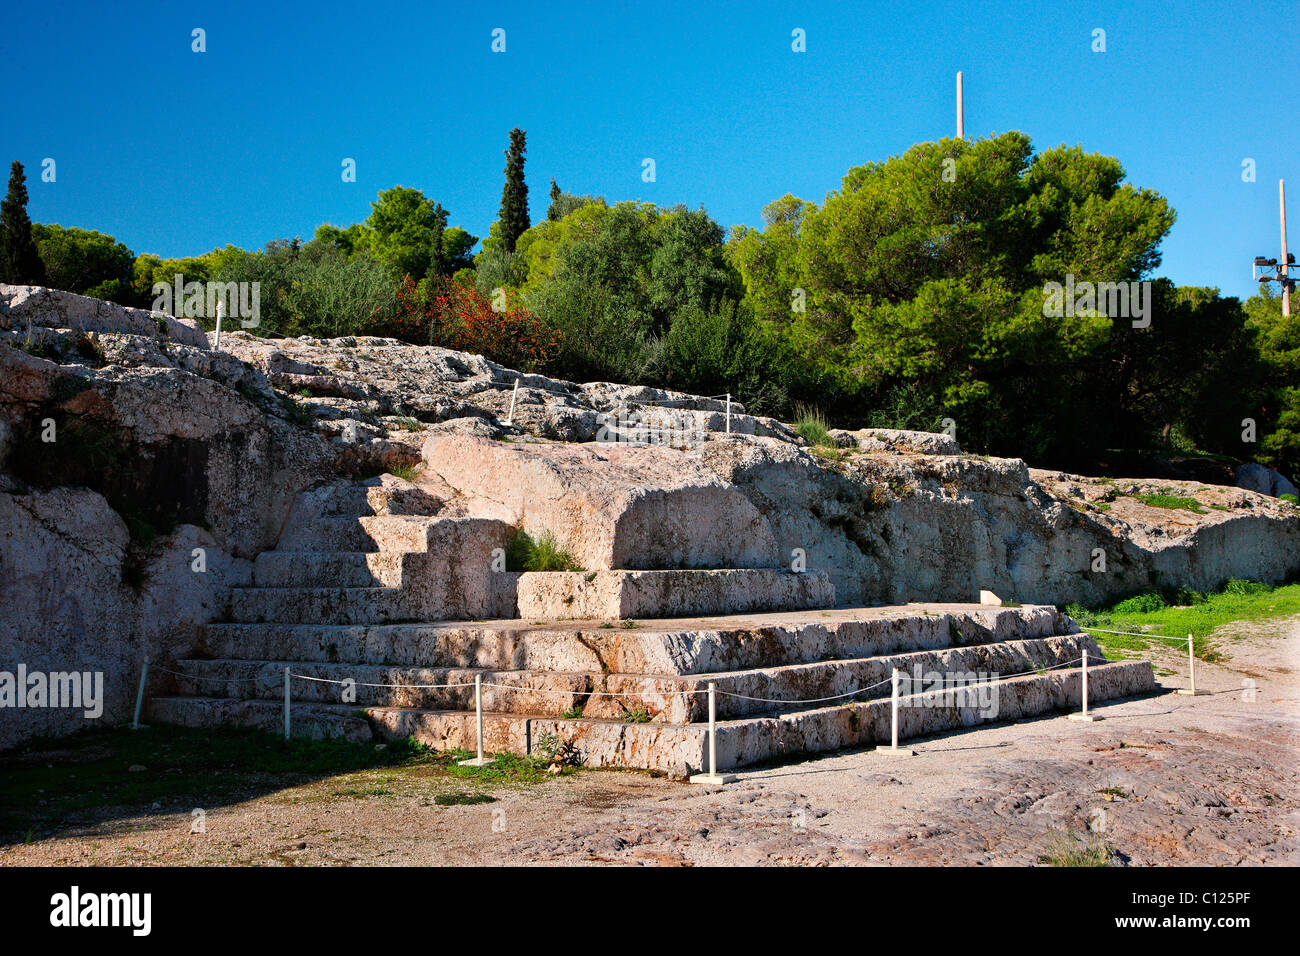 El "bema" o "Vema" de Pnyx, donde las asambleas populares estaban teniendo lugar en la antigua Atenas, Grecia. Foto de stock